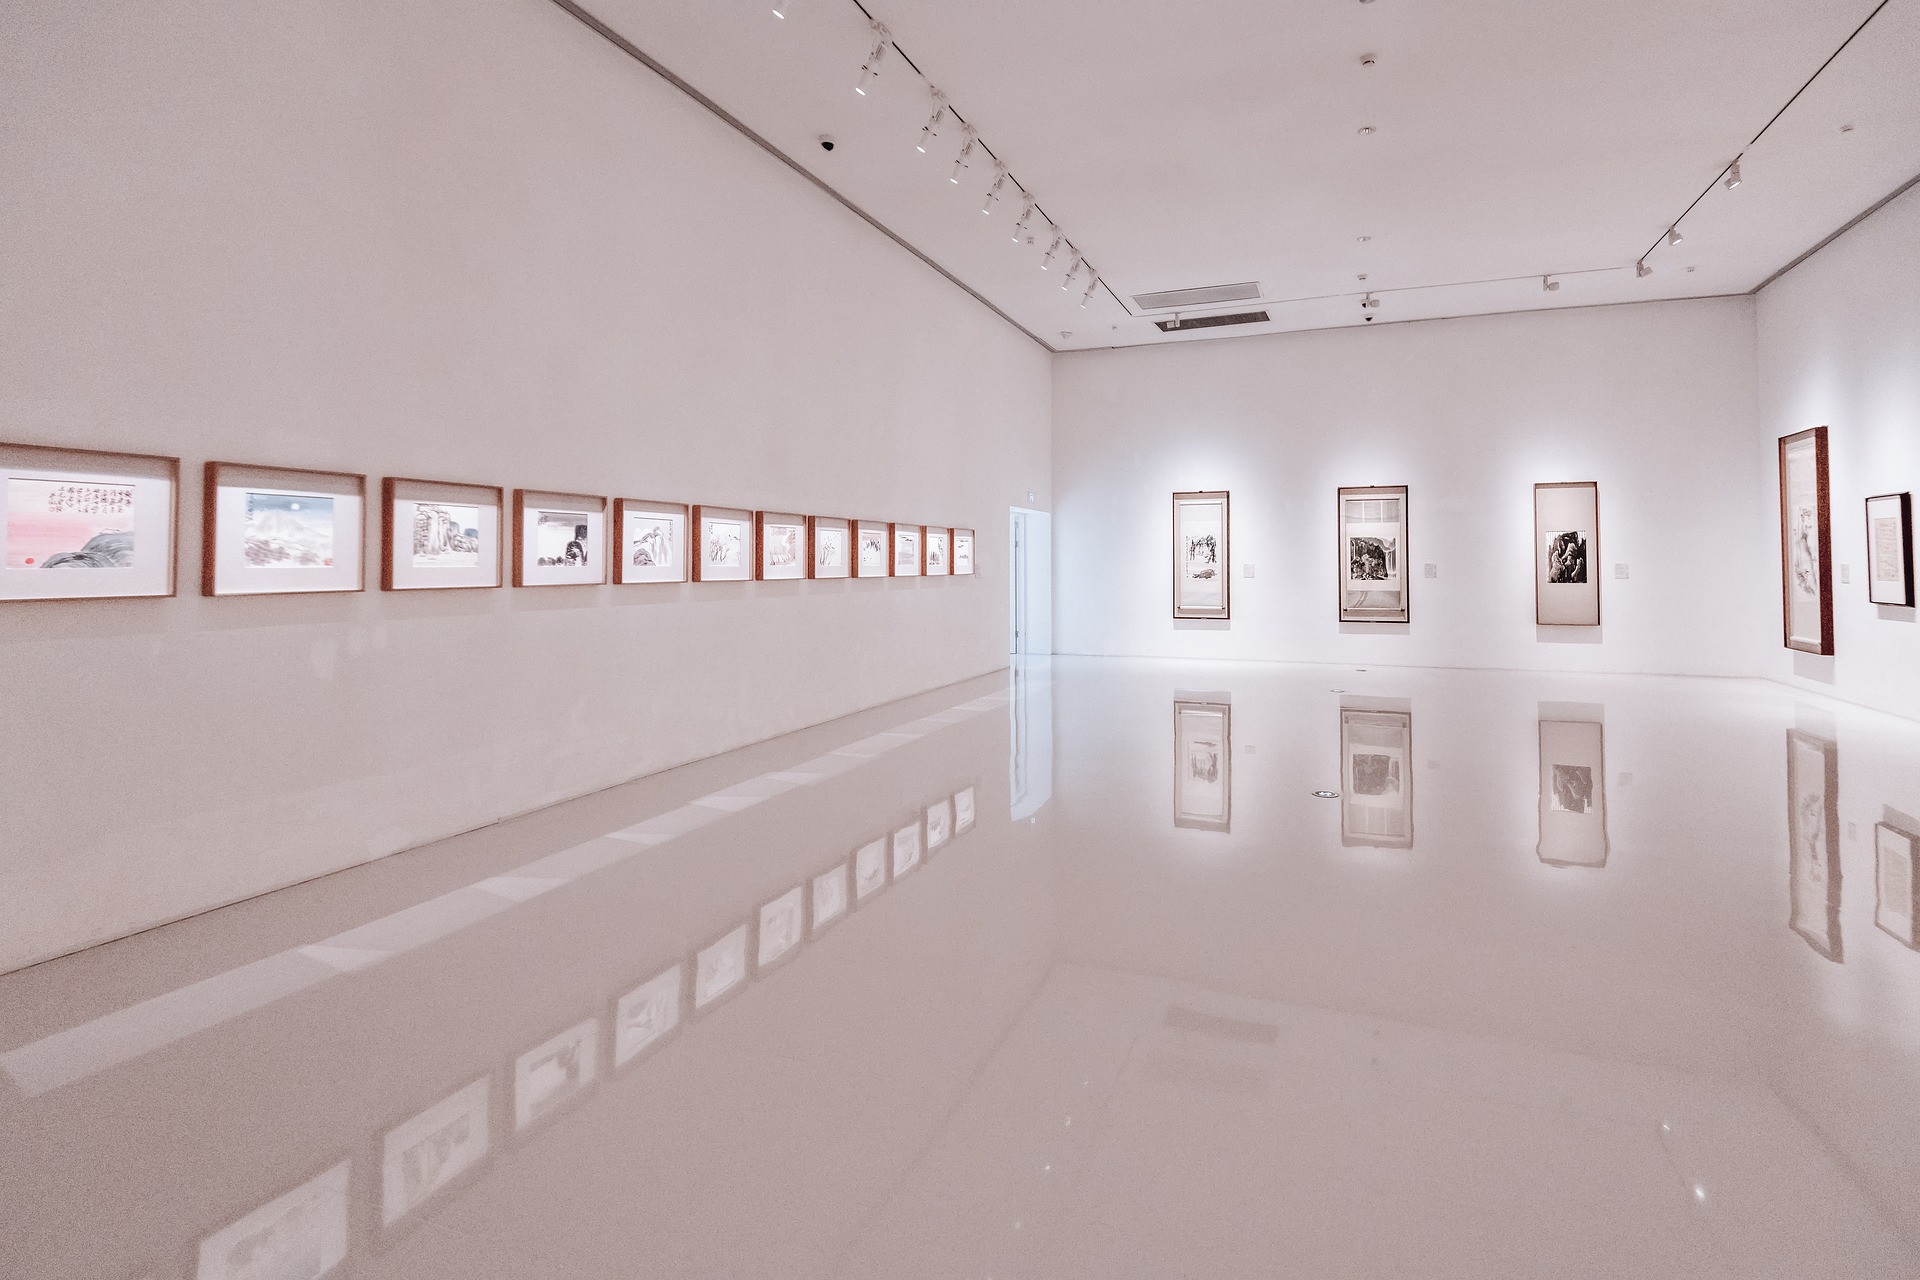 Новую художественную галерею возведут в районе Хамовники. Фото: pixabay.com